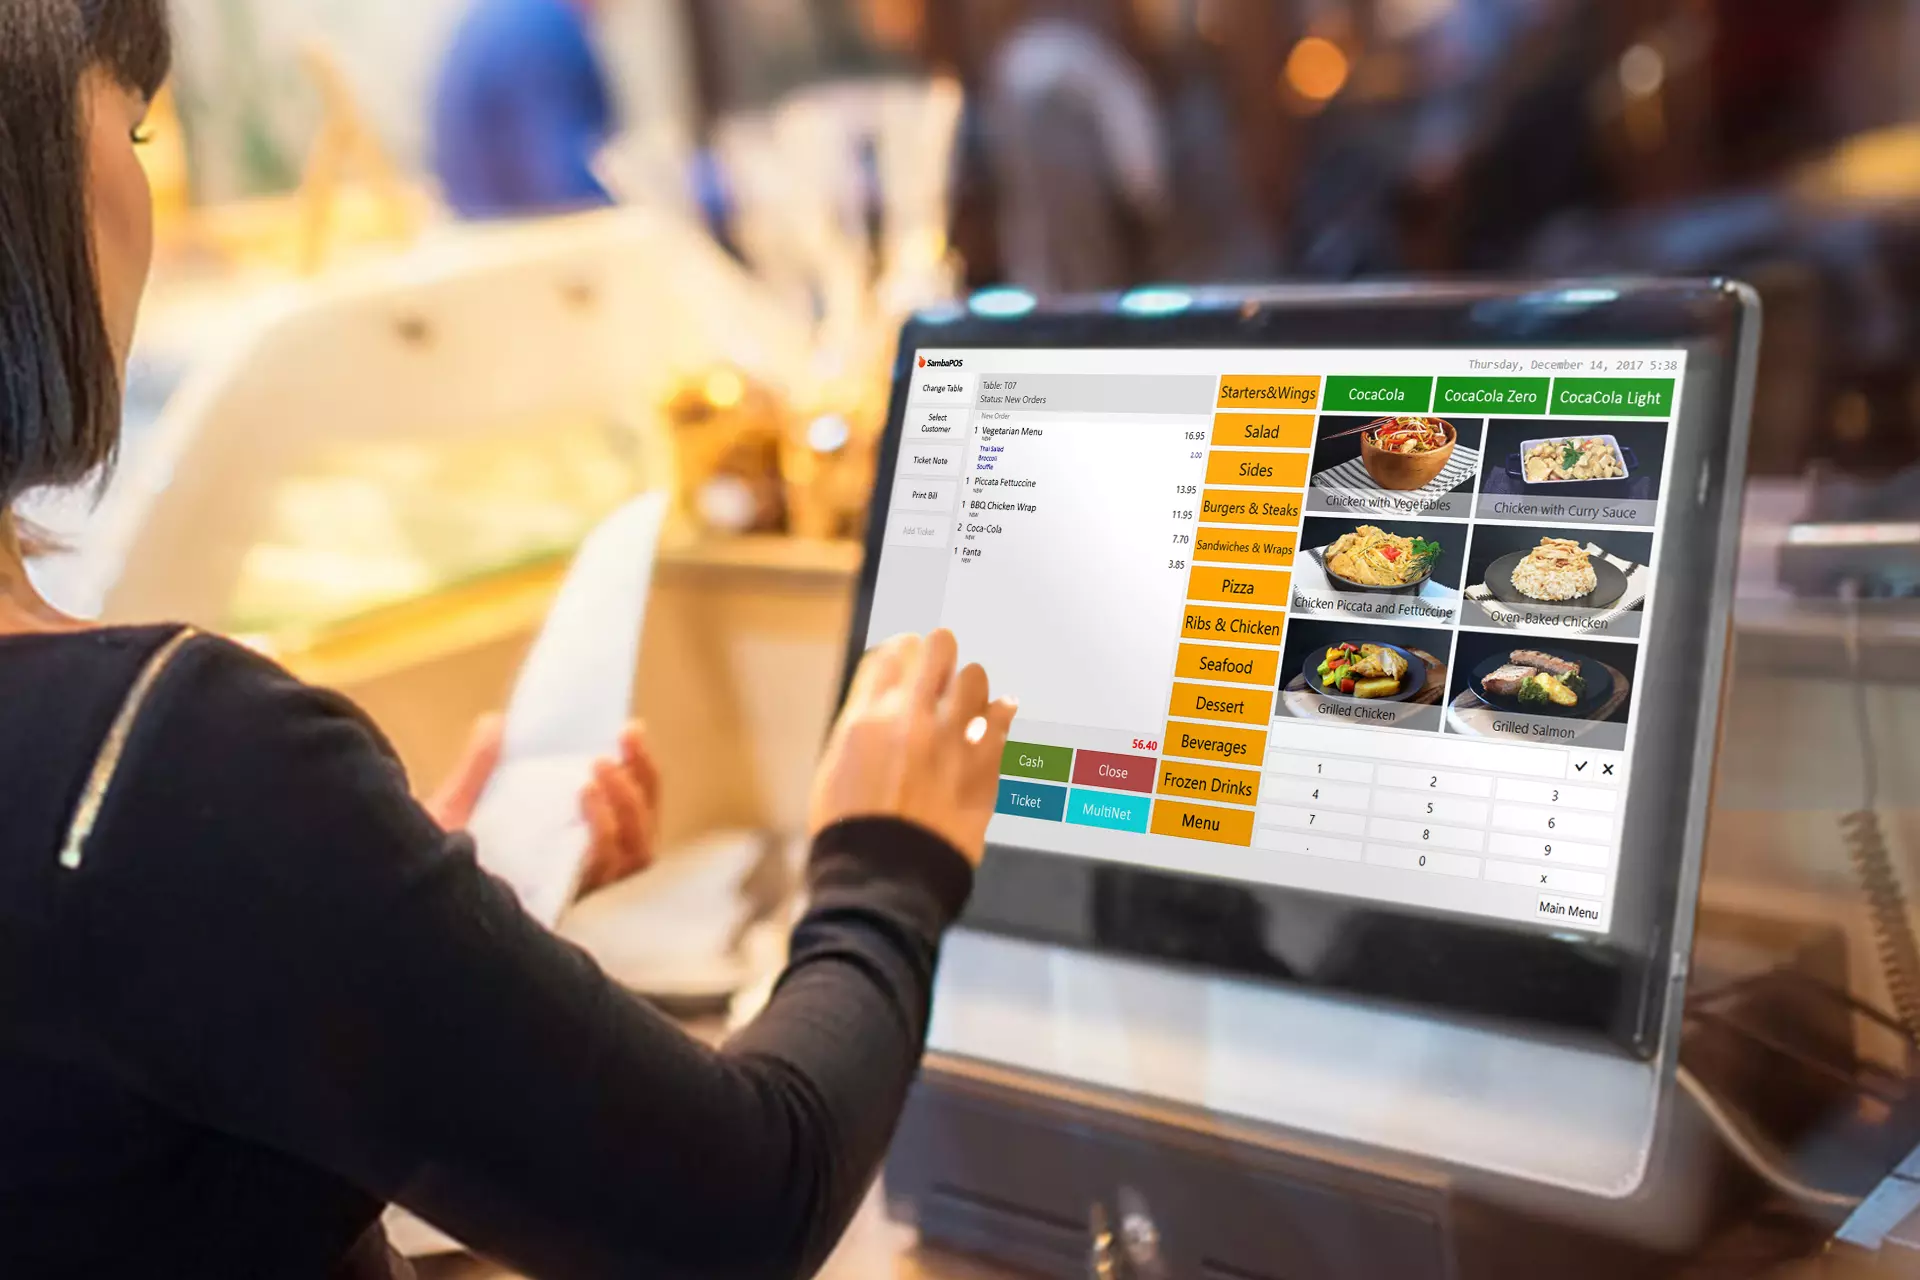 áp dụng công nghệ để tối ưu chi phí nhà hàng